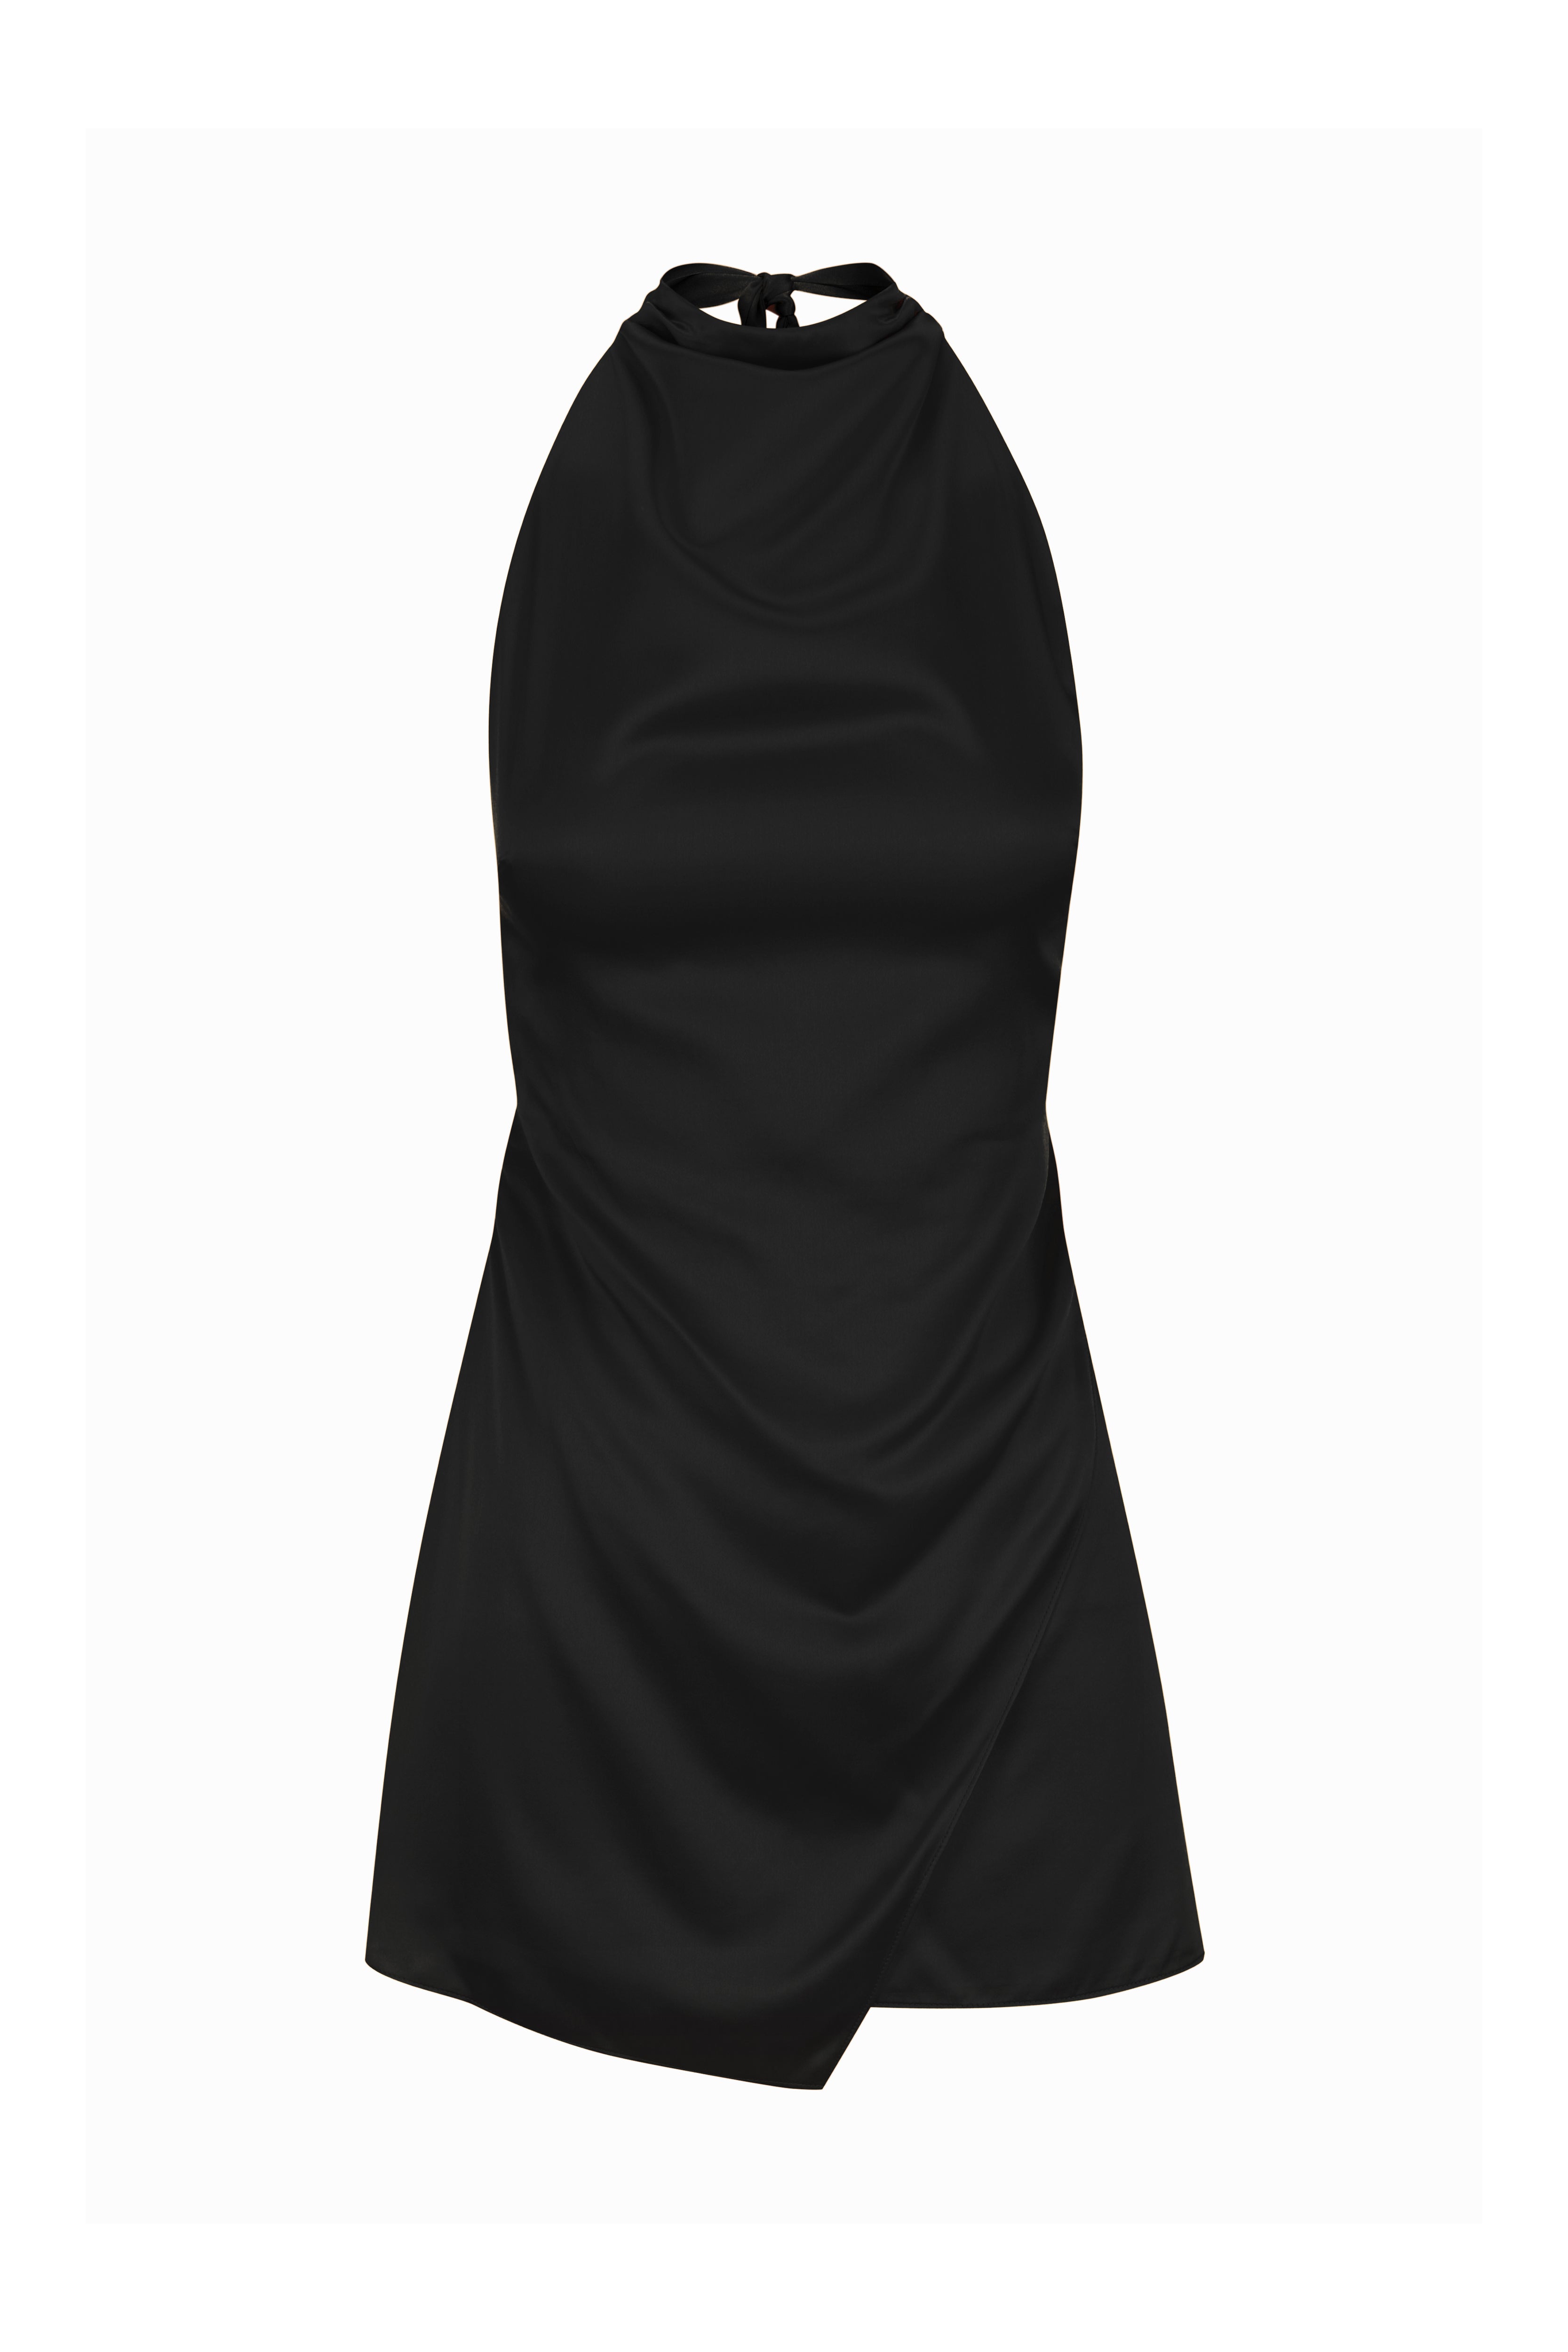 Toni Mini Dress // Black